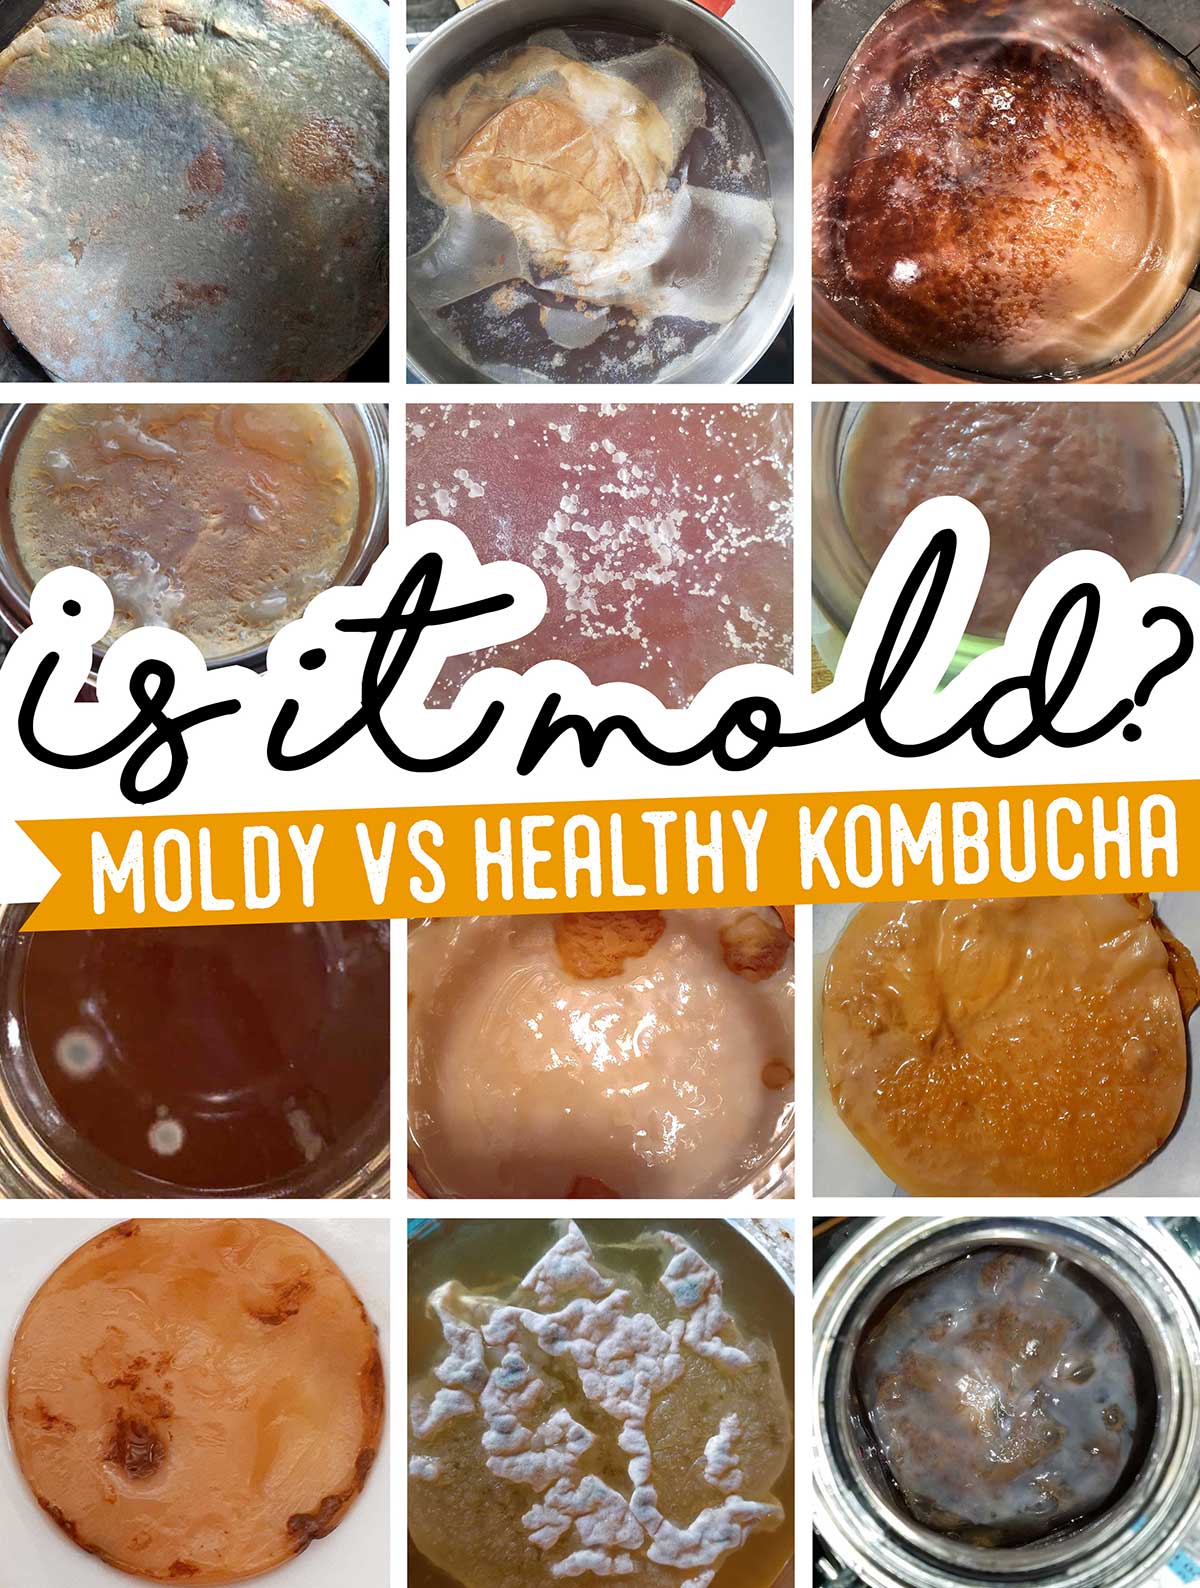 Does my kombucha have mold?